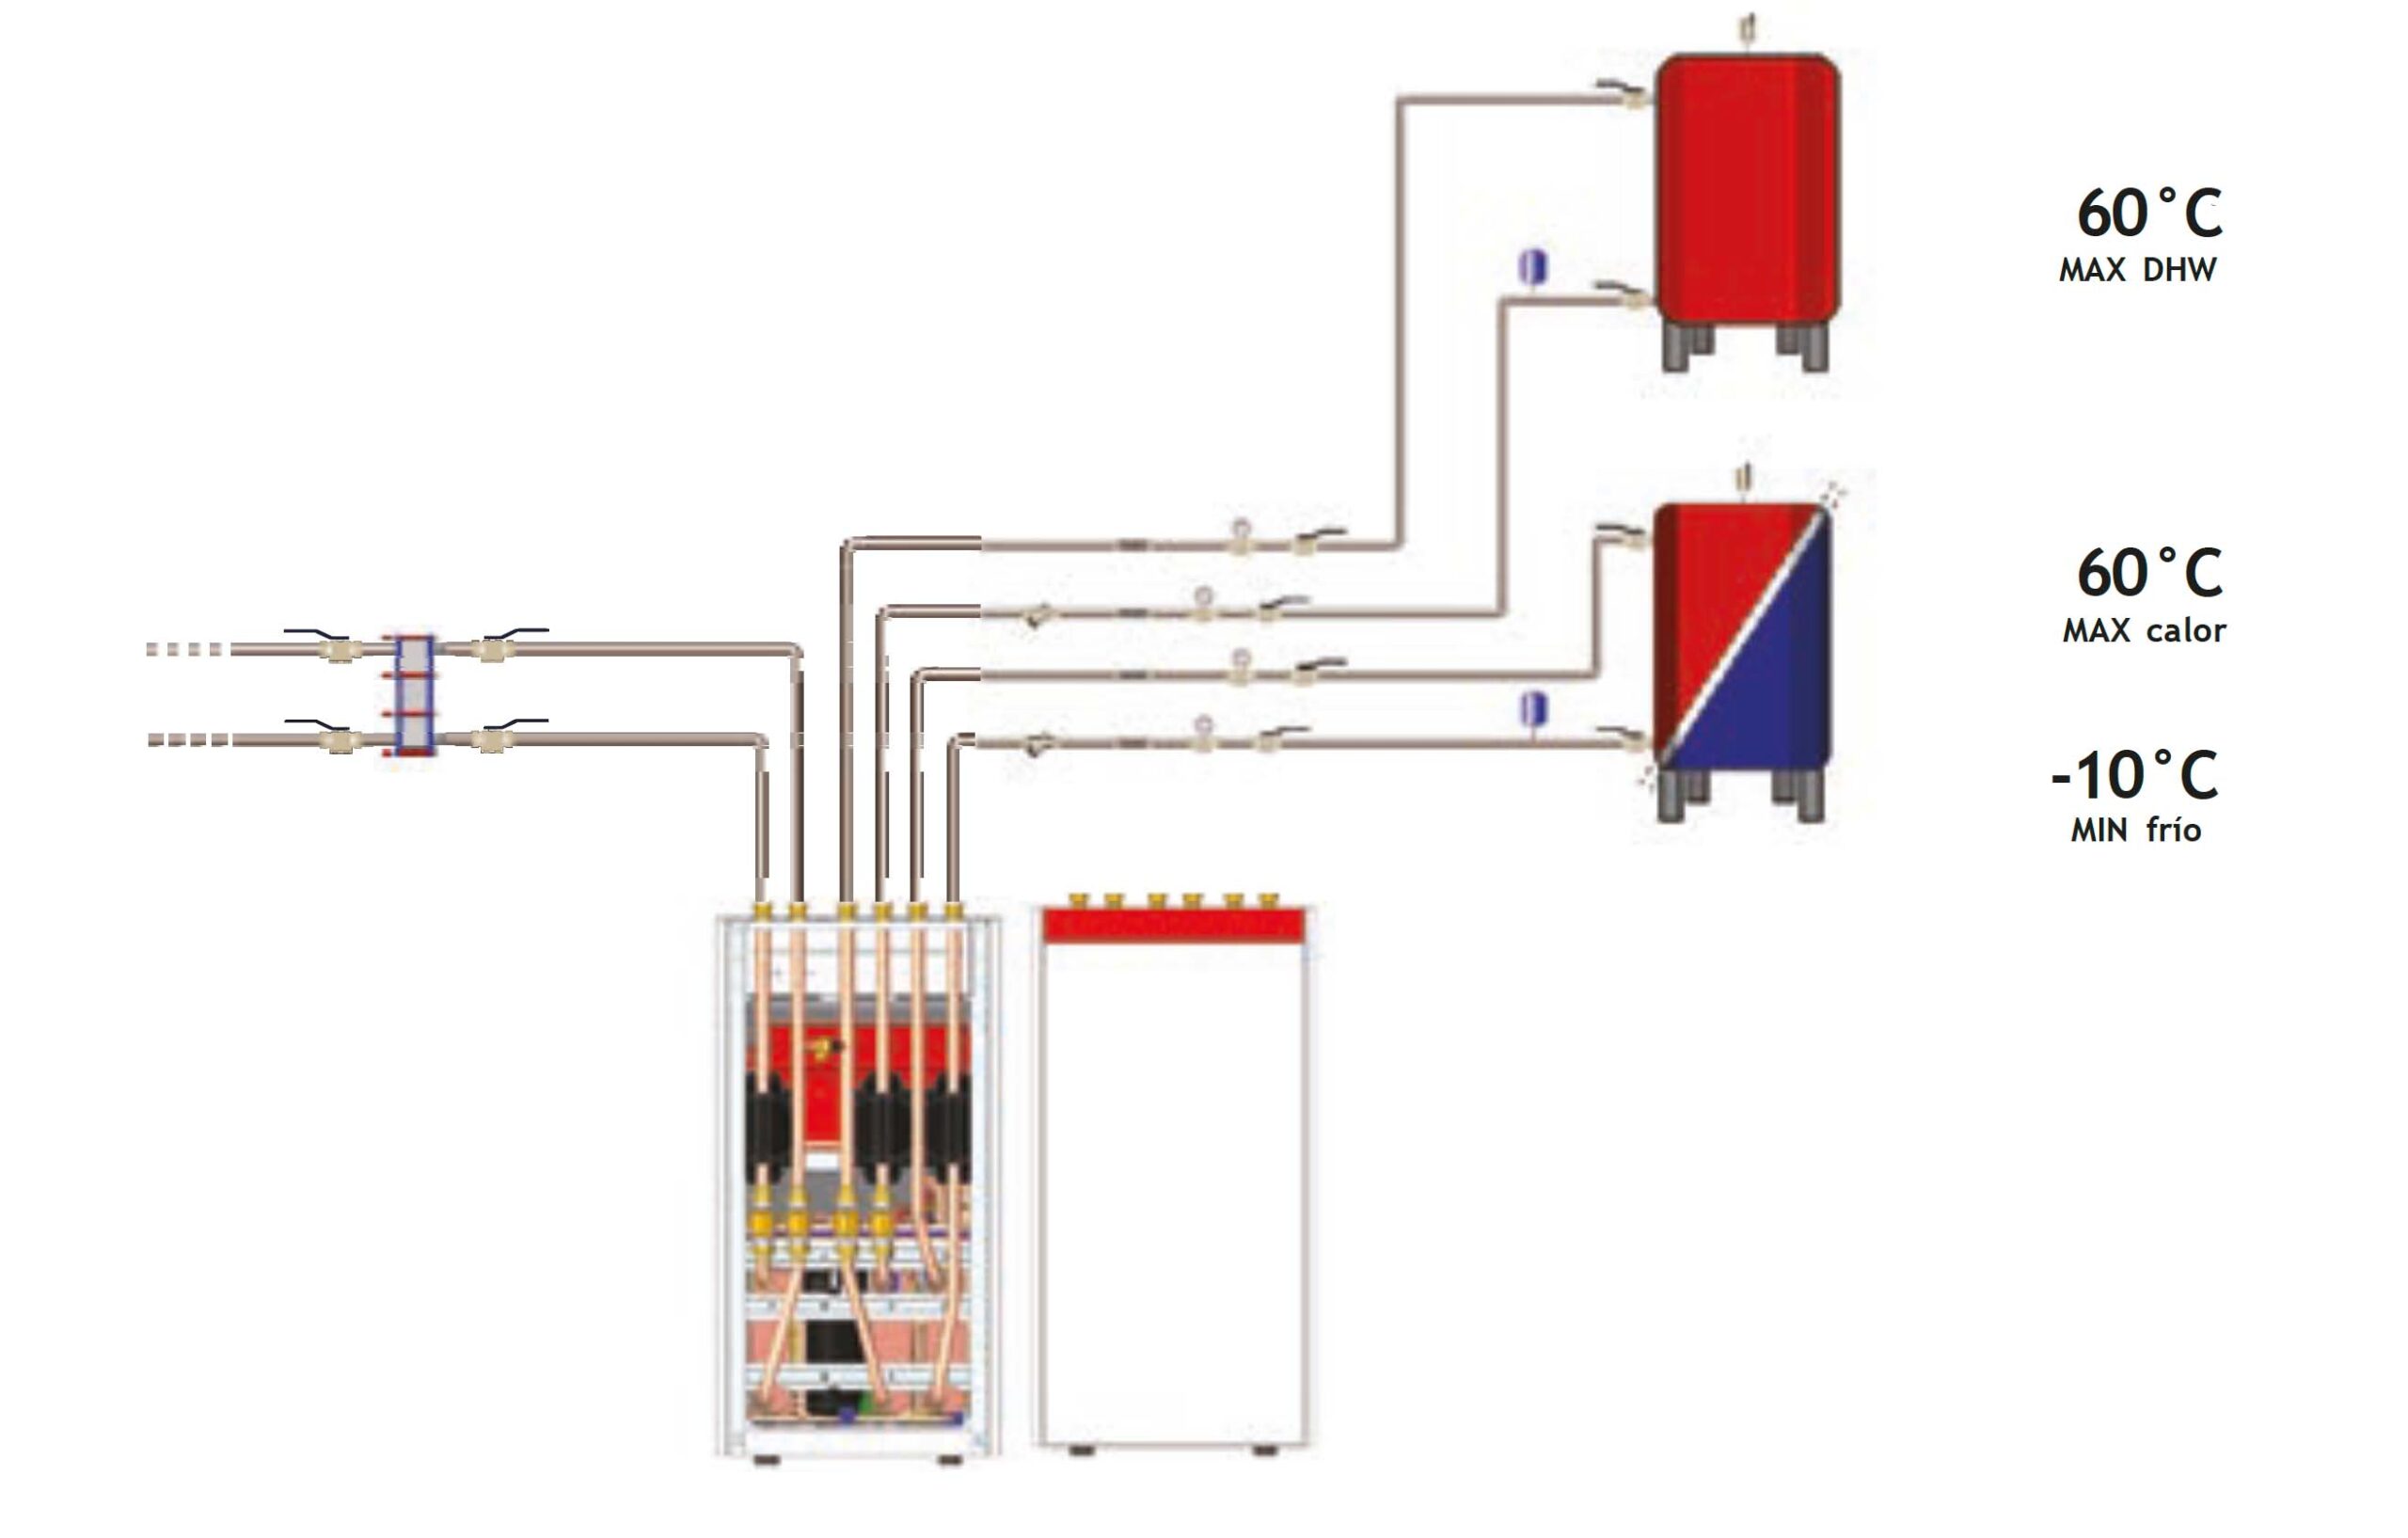 Configuración multifunción bomba de calor RED Y RED MAX